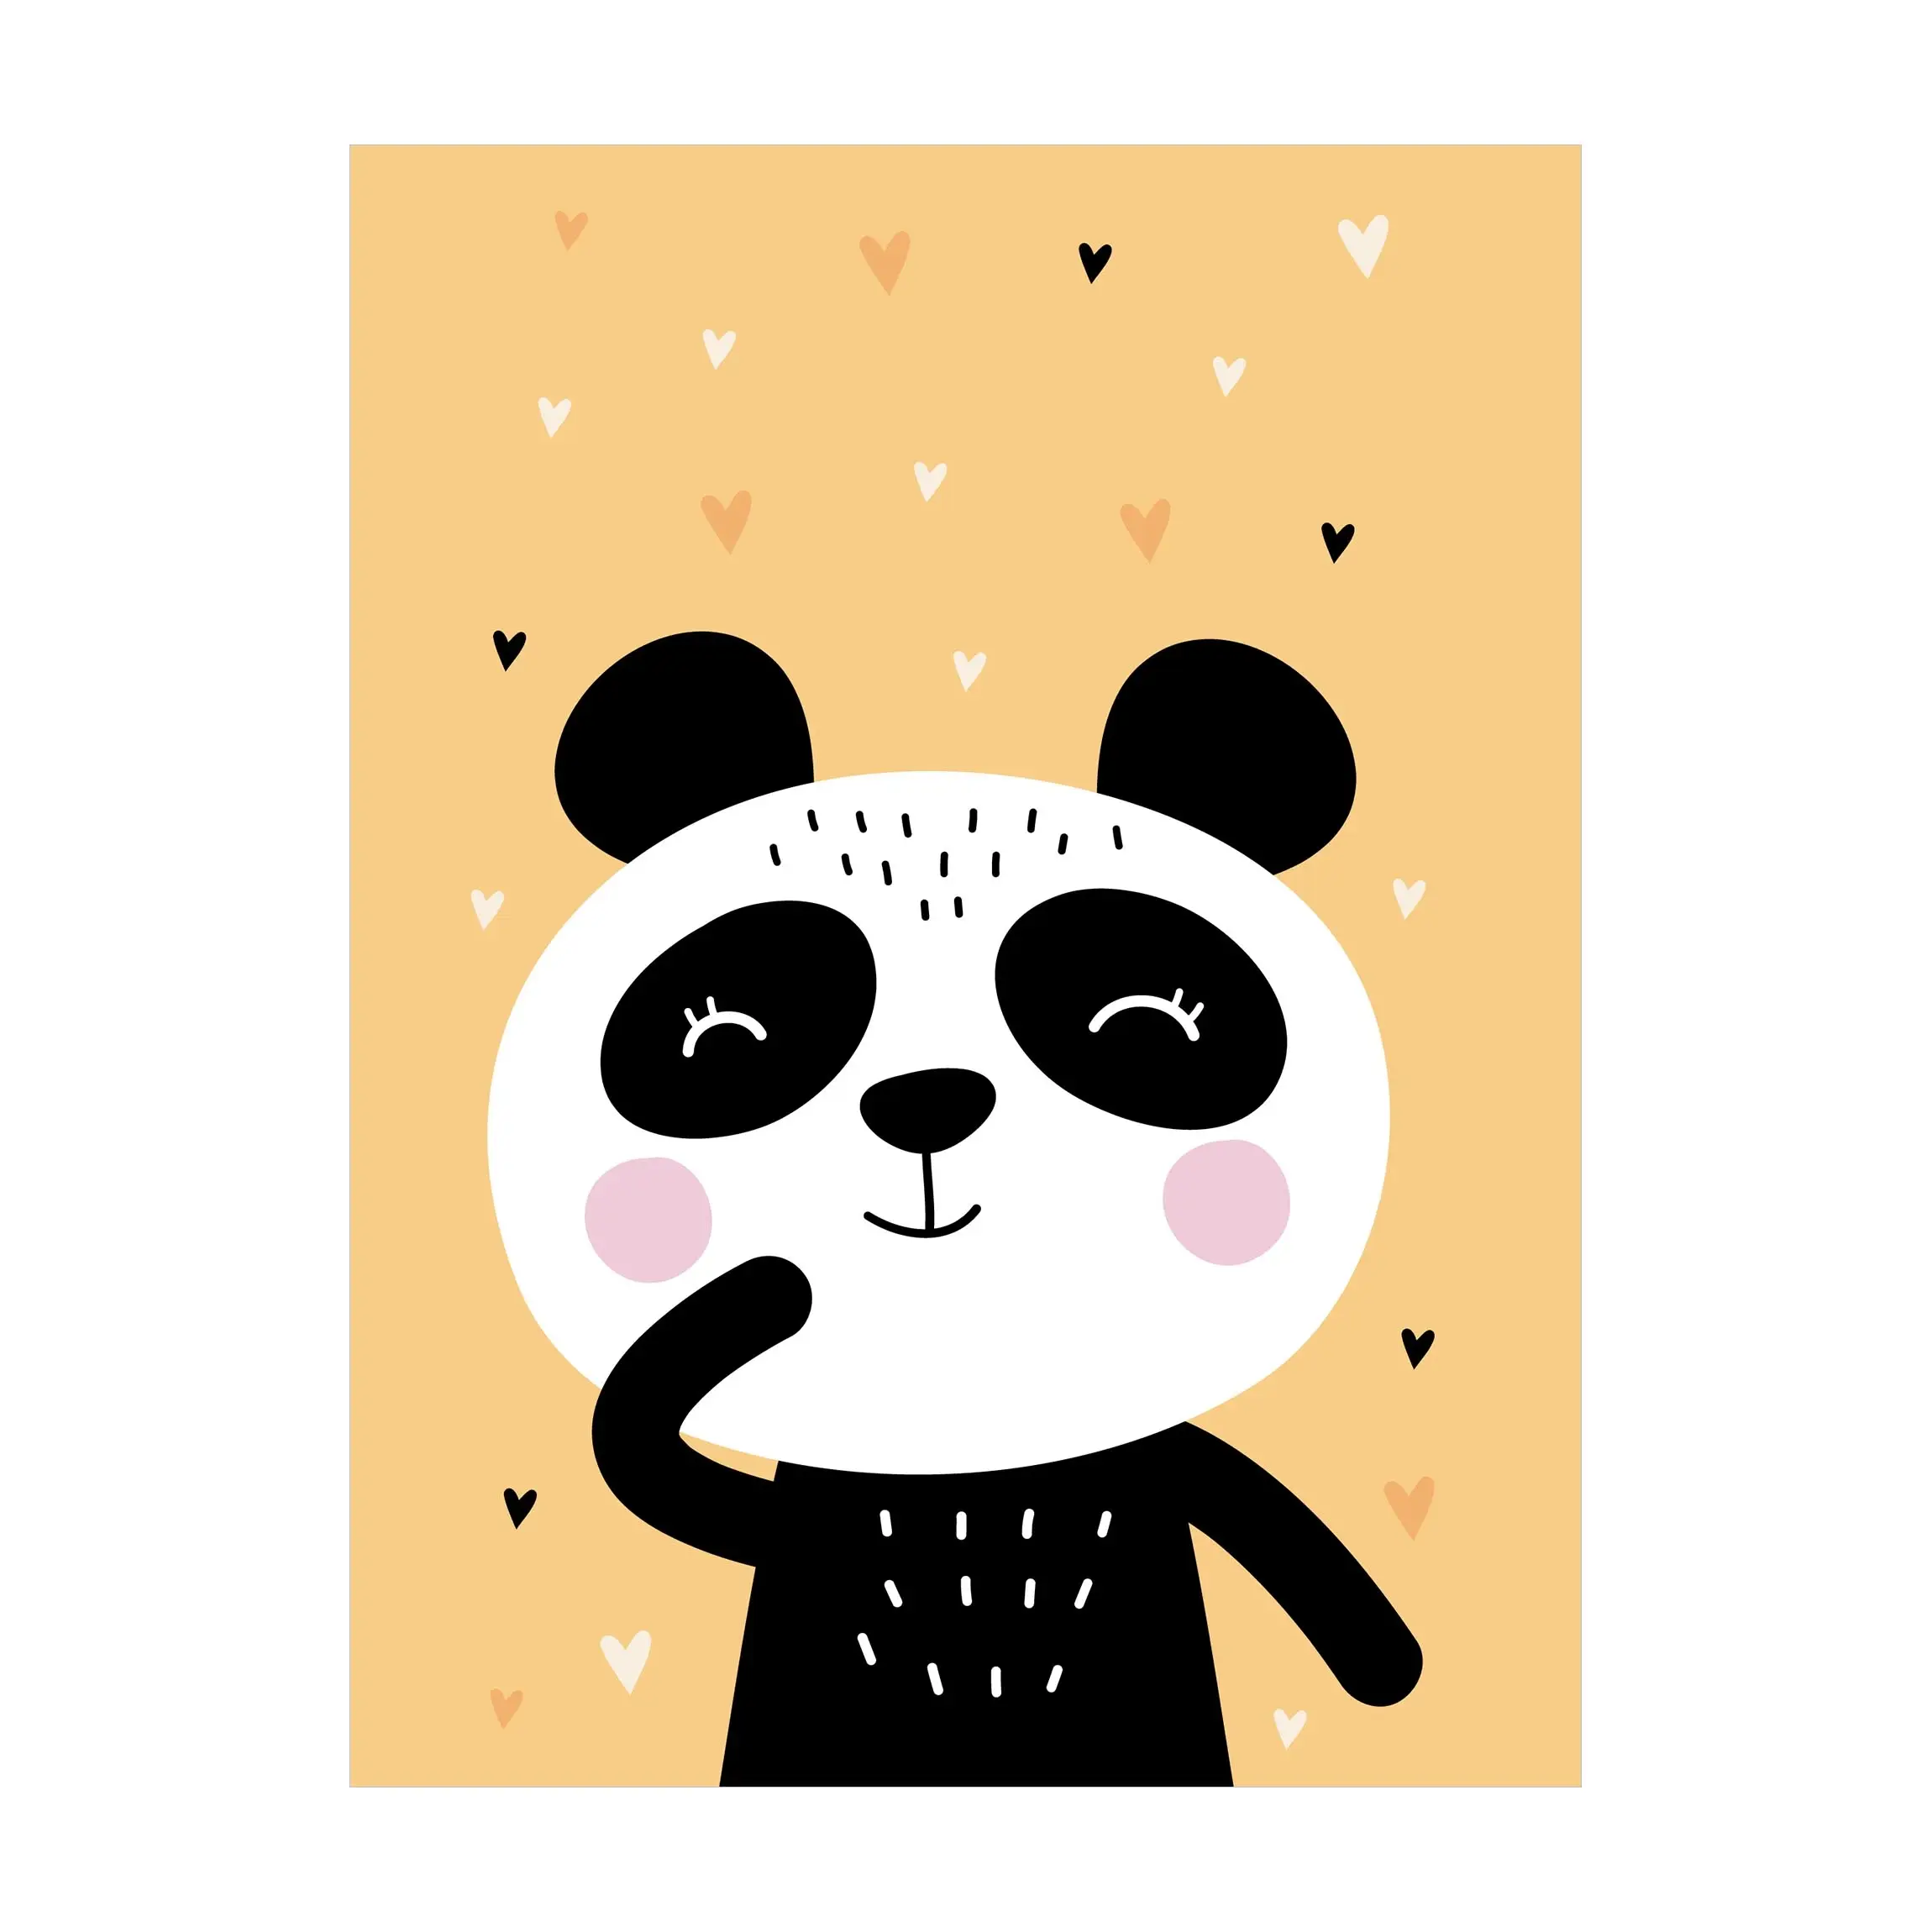 Der gl眉ckliche Panda